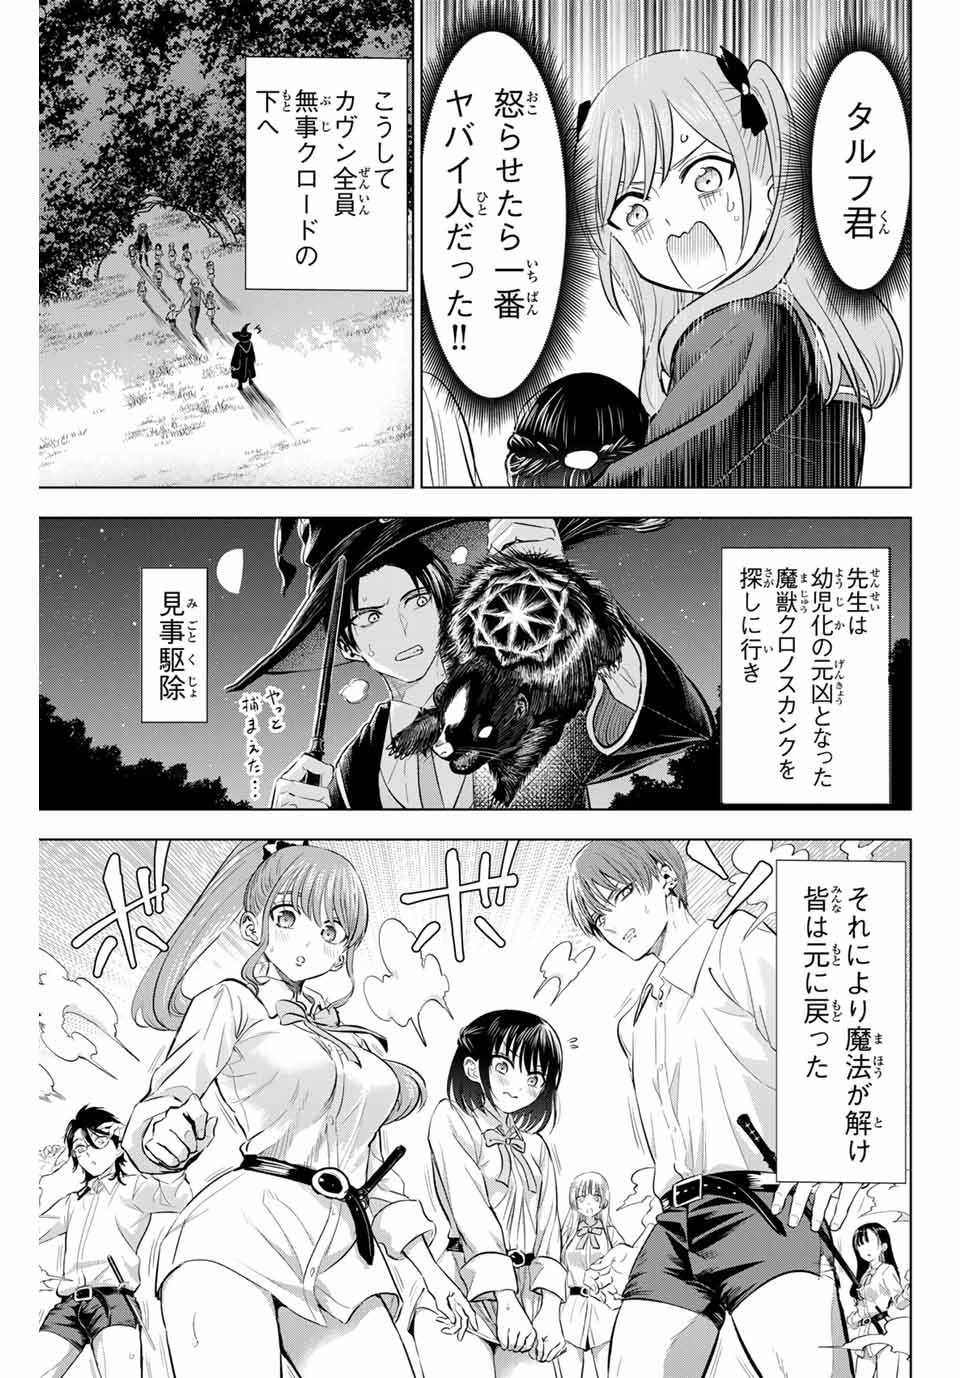 Kuroneko to Majo no Kyoushitsu - Chapter 63 - Page 19